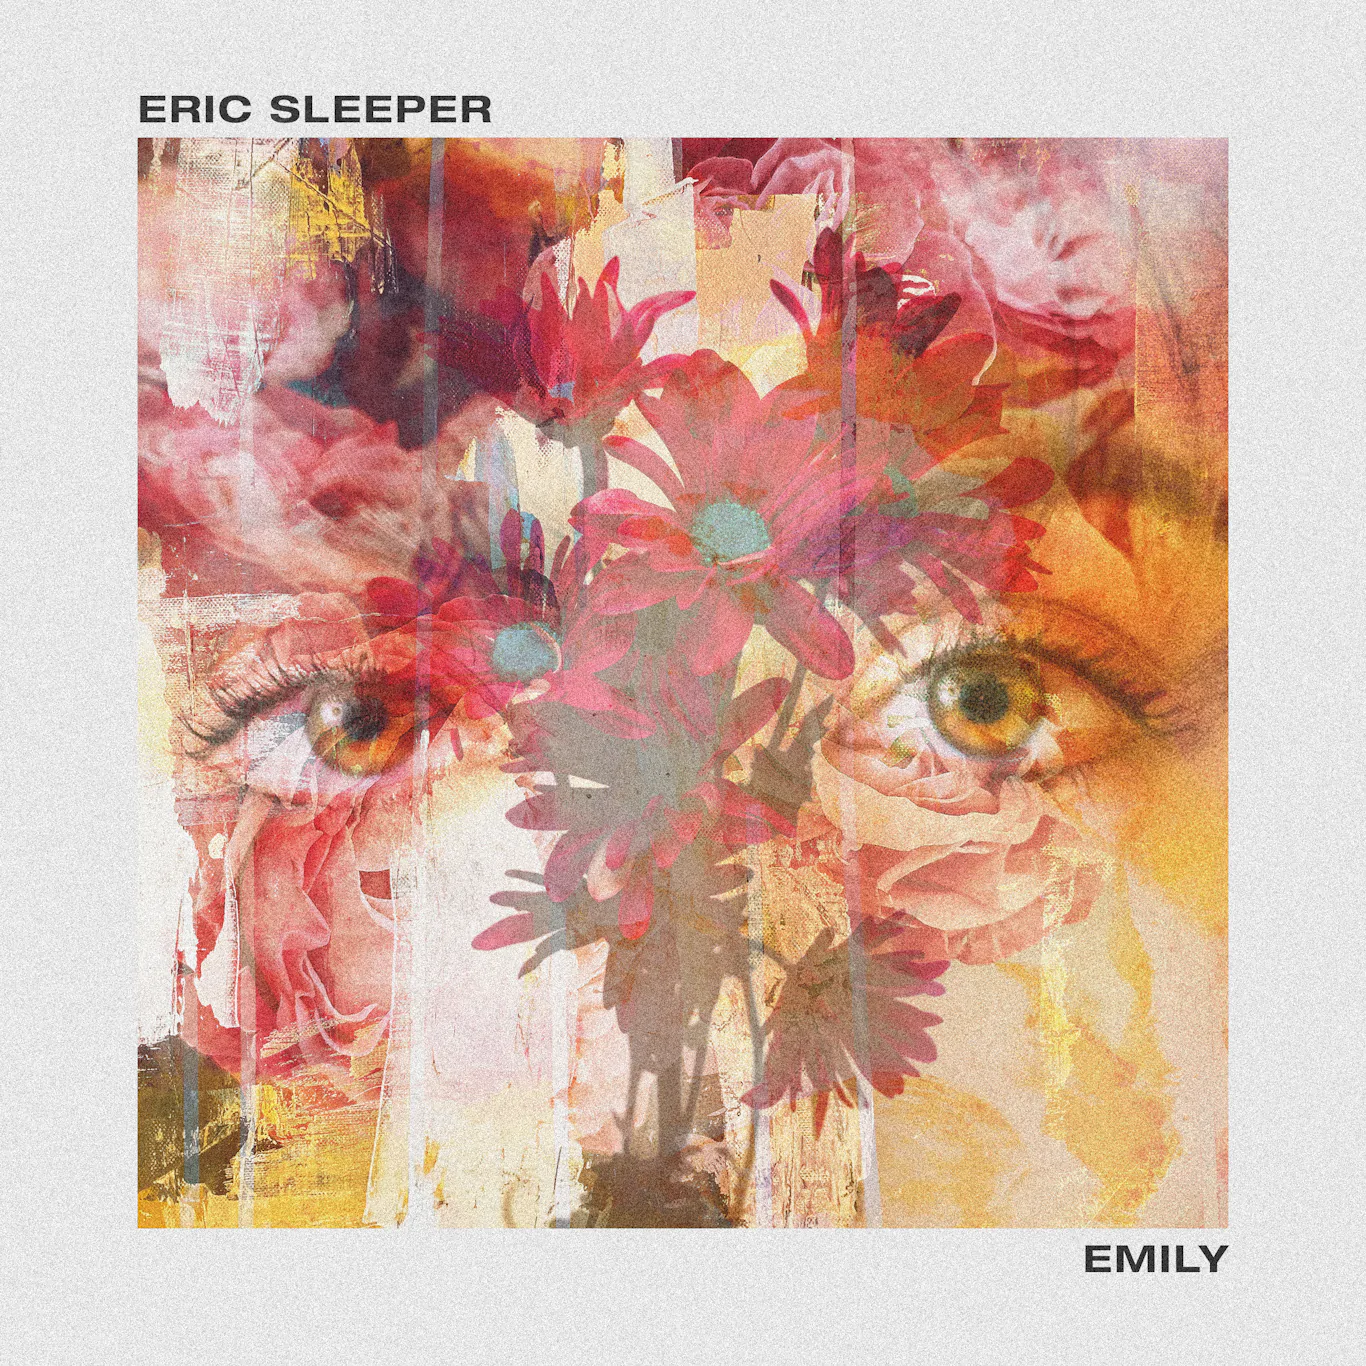 TRACK PREMIERE: Eric Sleeper – Emily